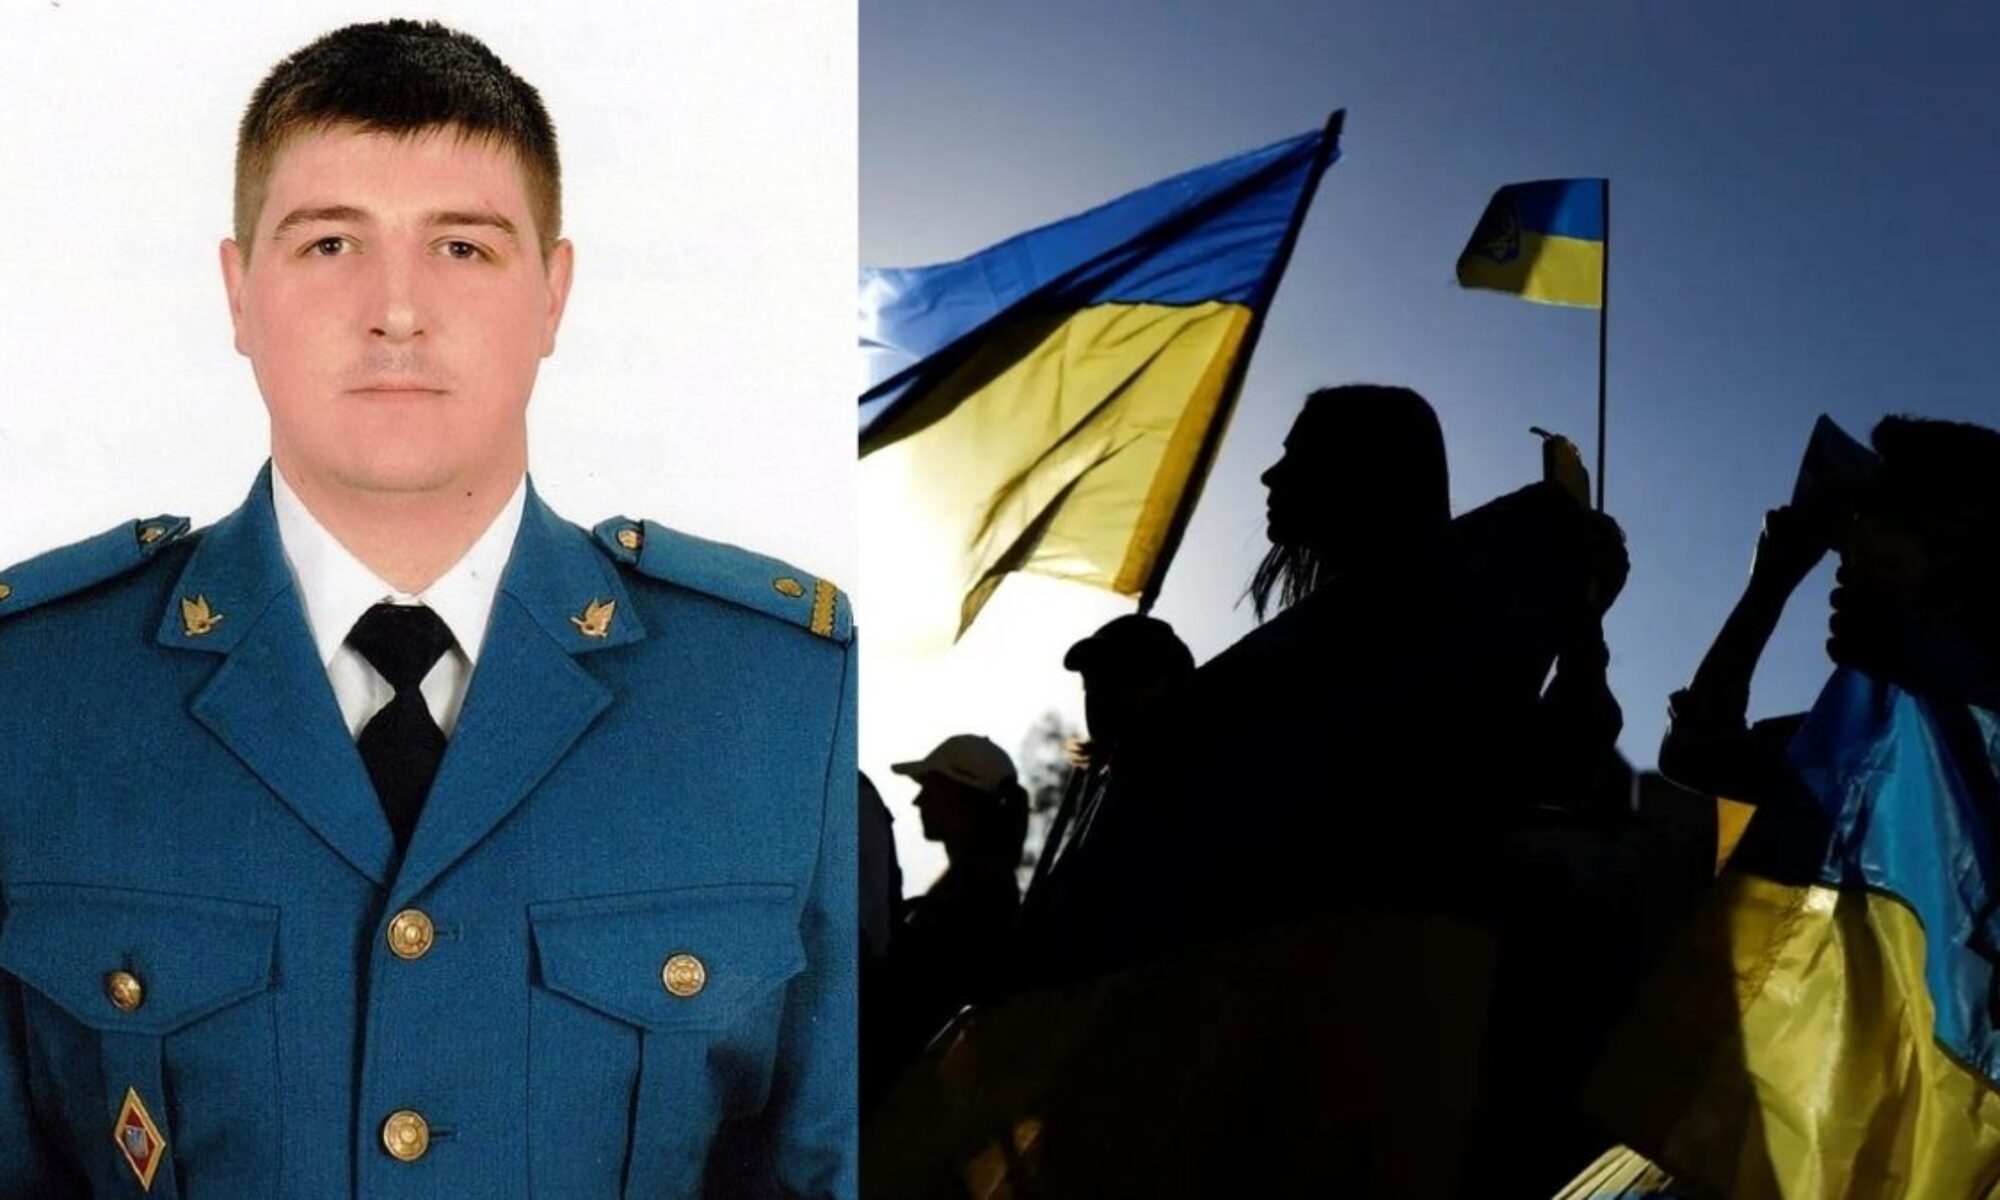 Ukraynalıların kahramanı "Kiev'in Hayaleti" lakaplı pilotun hayatını kaybettiği açıklandı